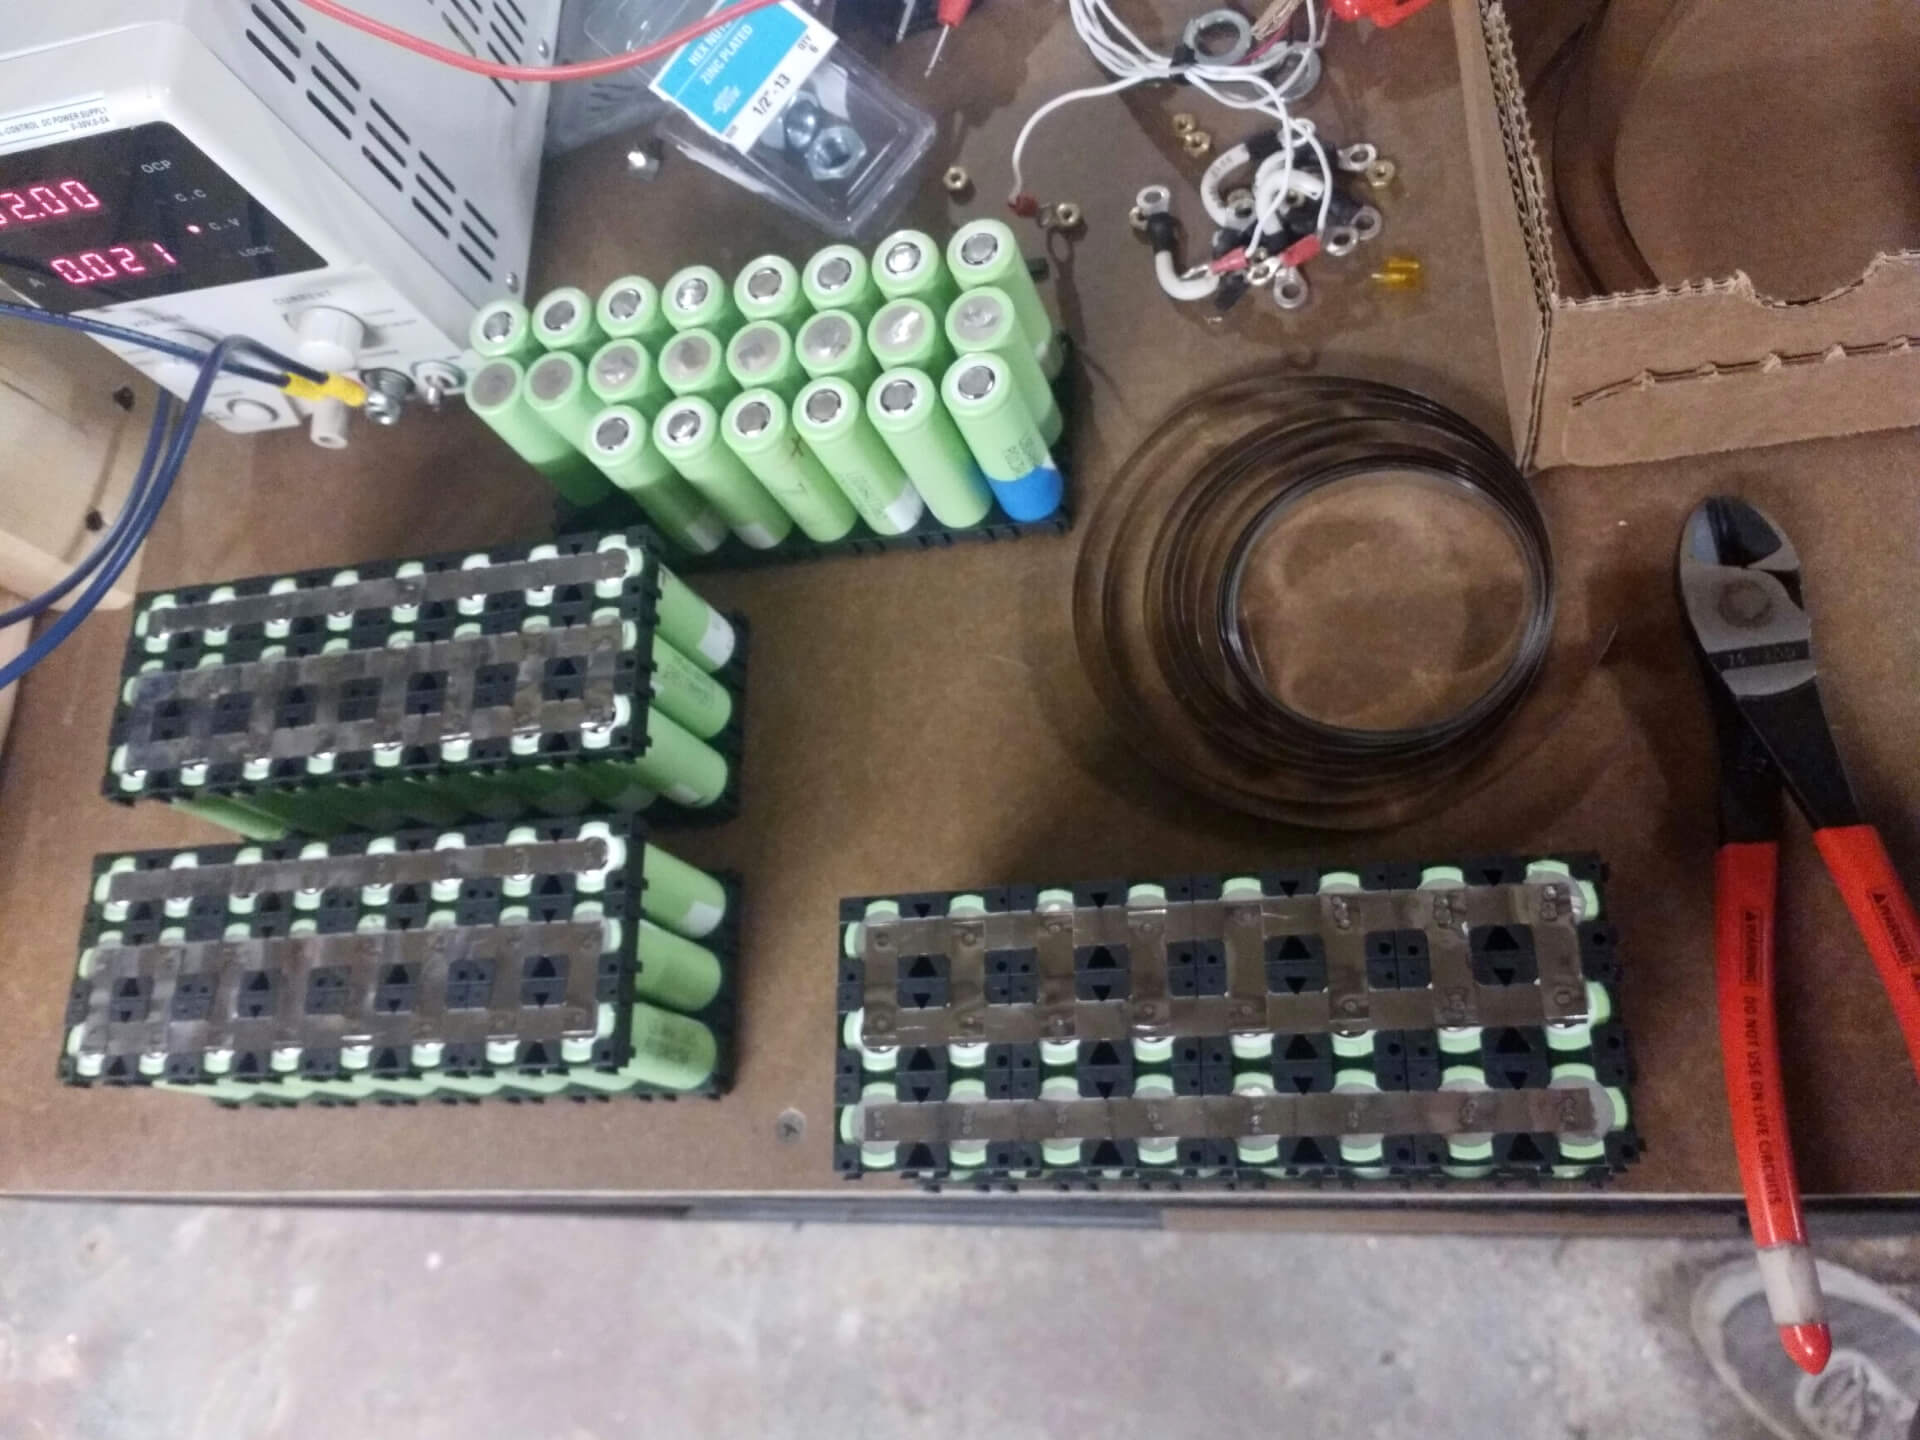 Assembling battery packs